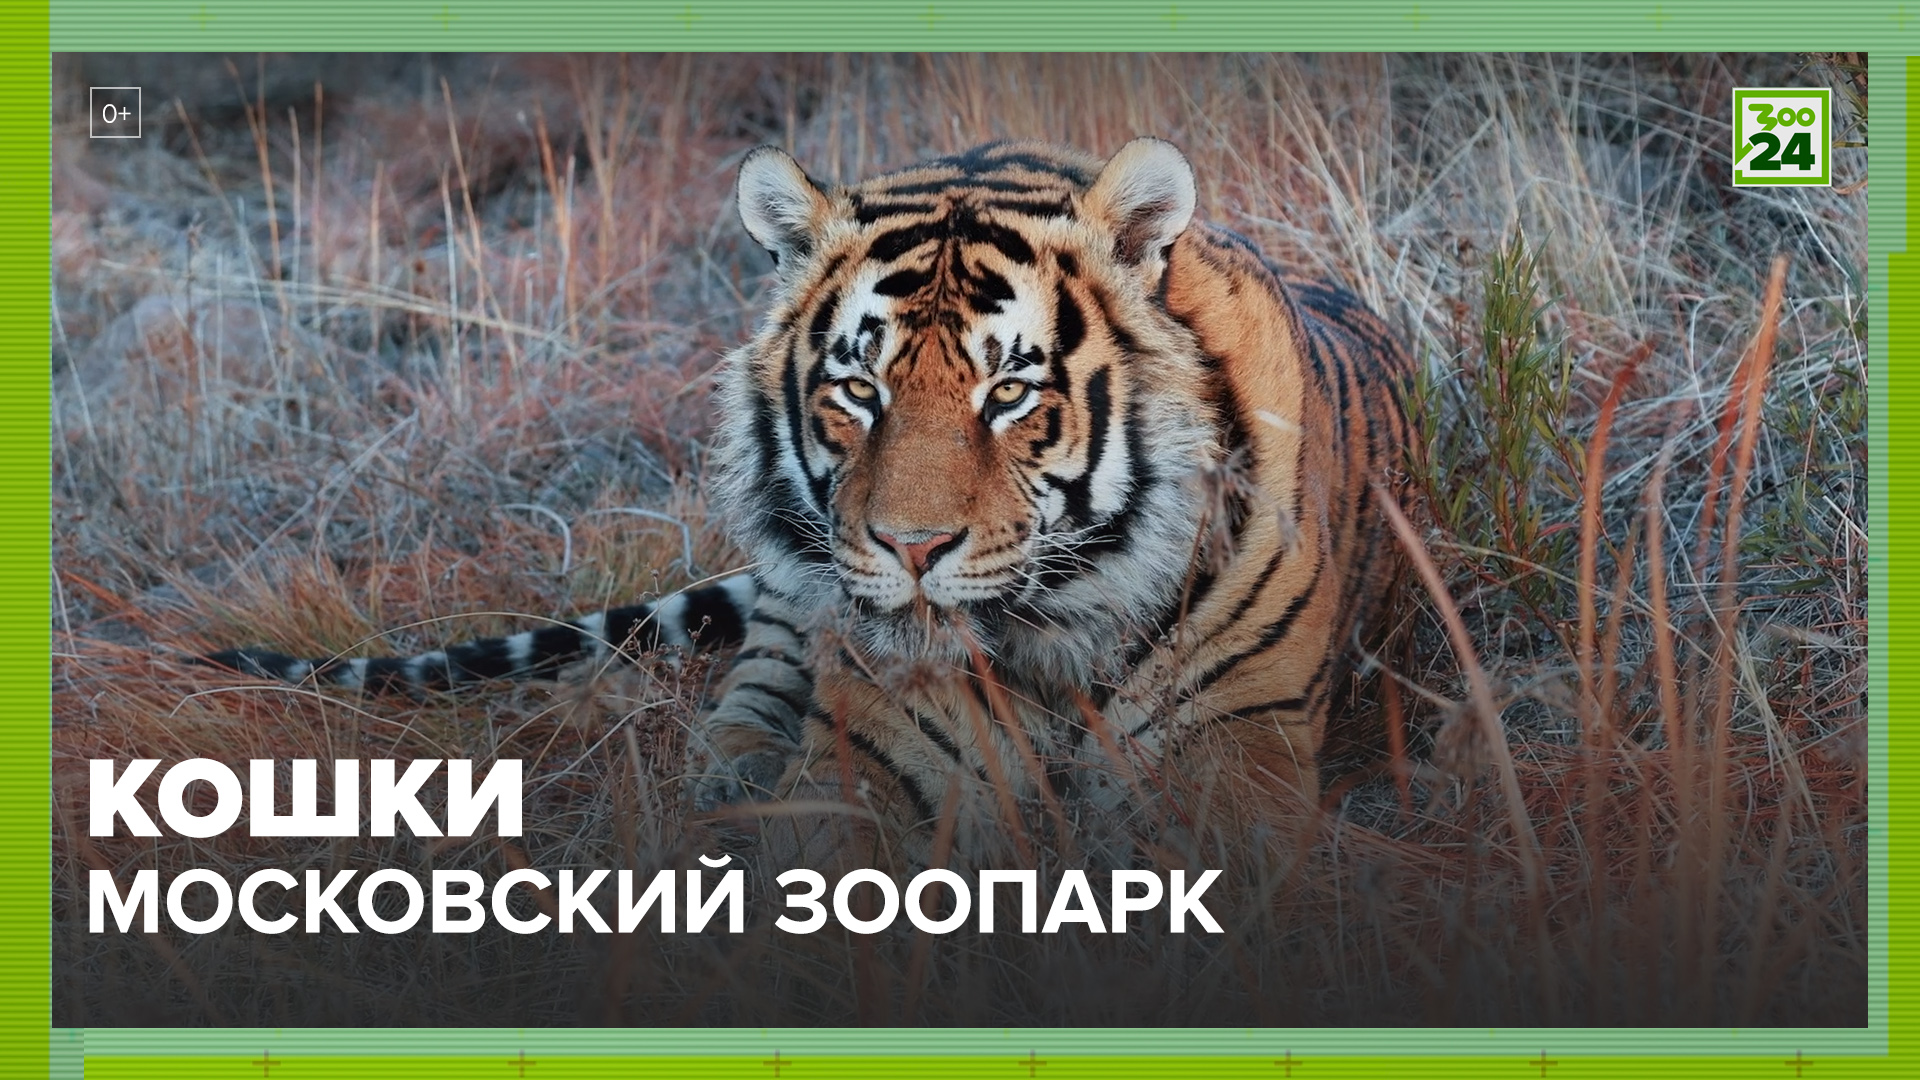 Кошки | Московский зоопарк | ЗОО 24